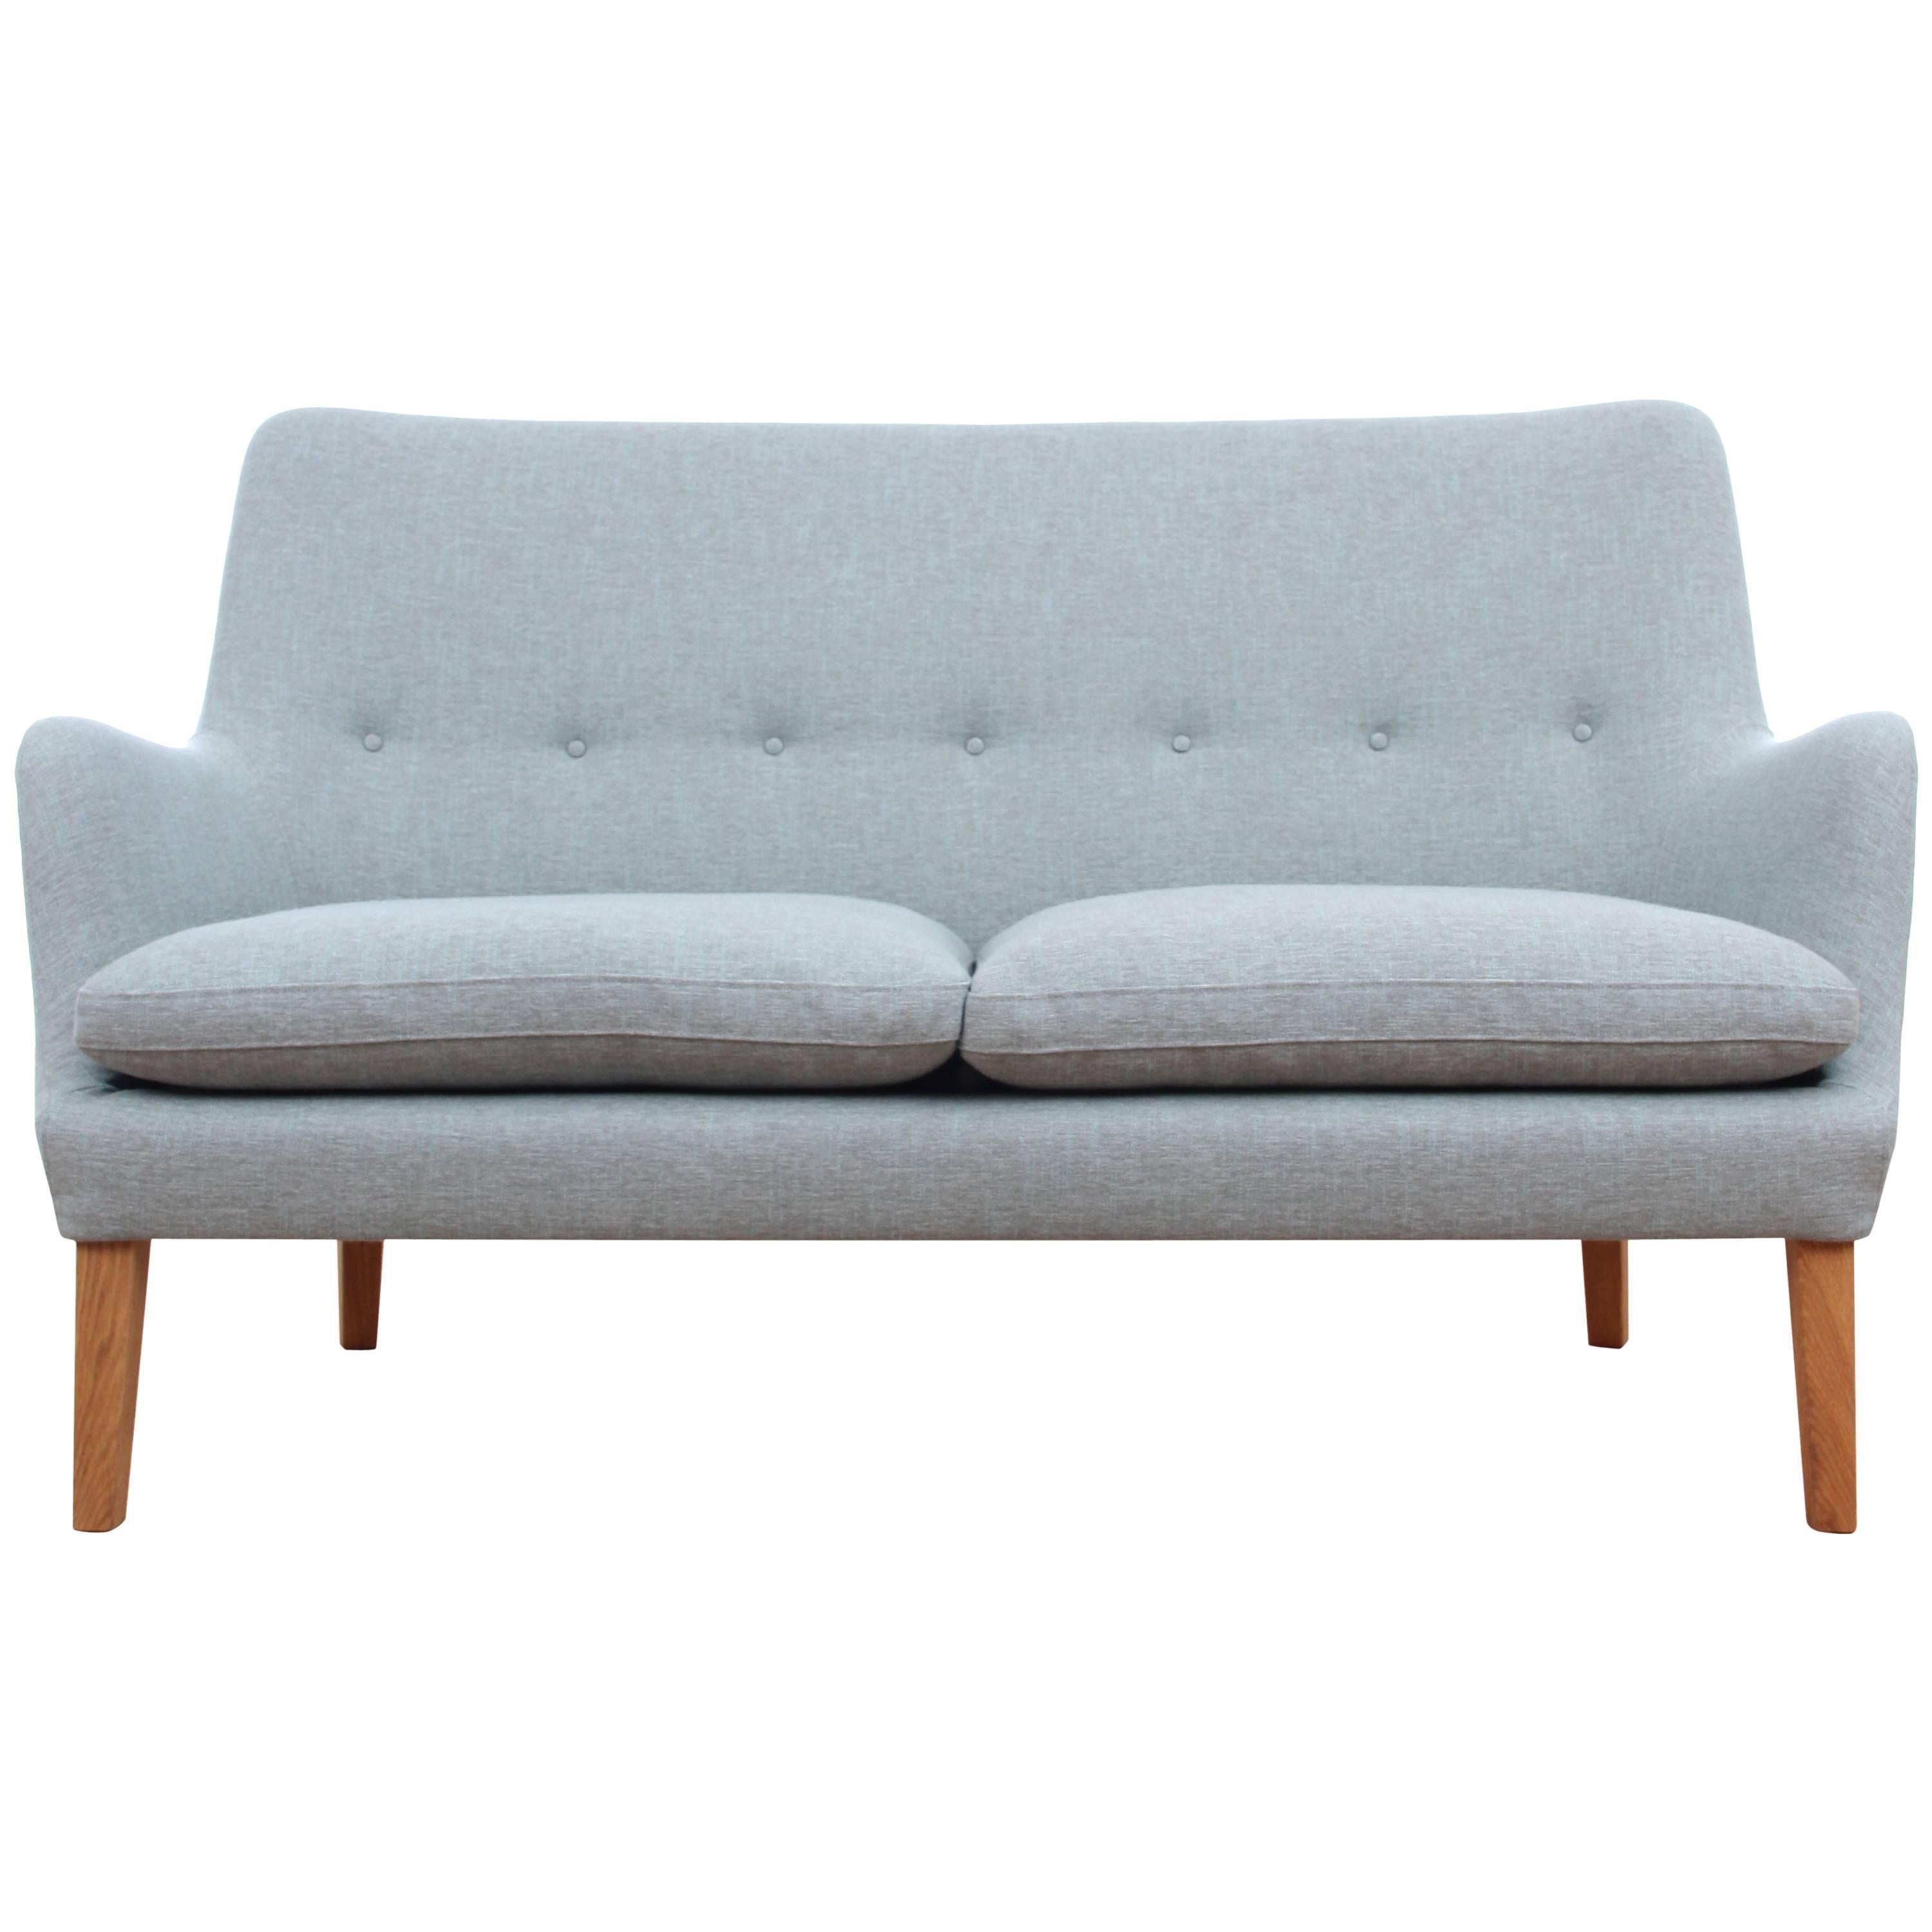 Mid-Century Modern Scandinavian Two Seats Sofa by Arne Vodder Av 53 New Release For Sale